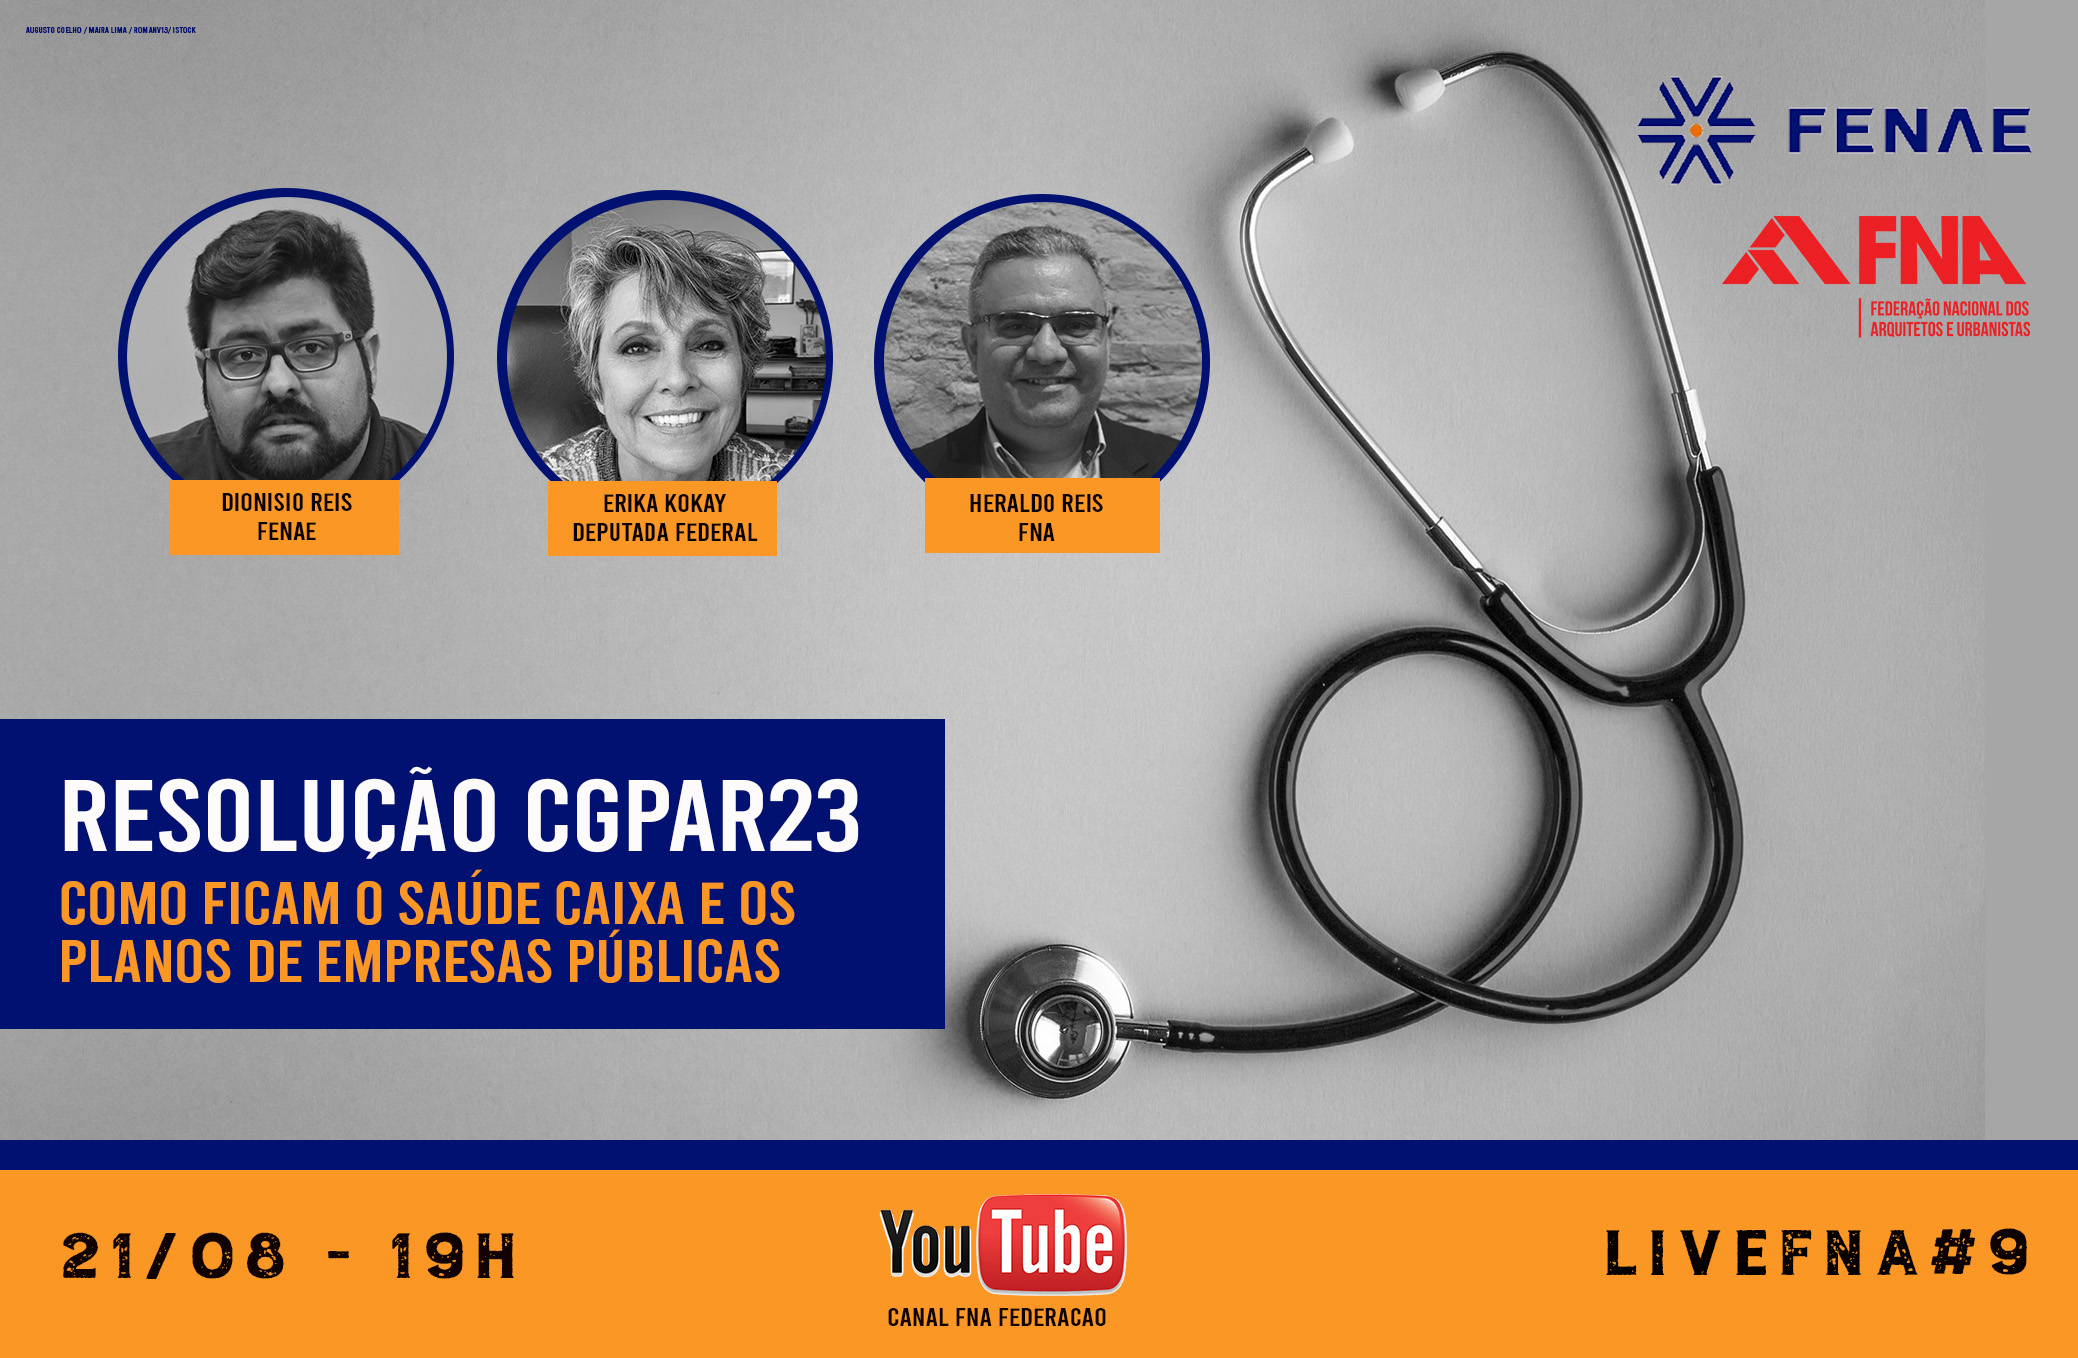 Live #9 debate ameaça ao Saúde Caixa e outros planos